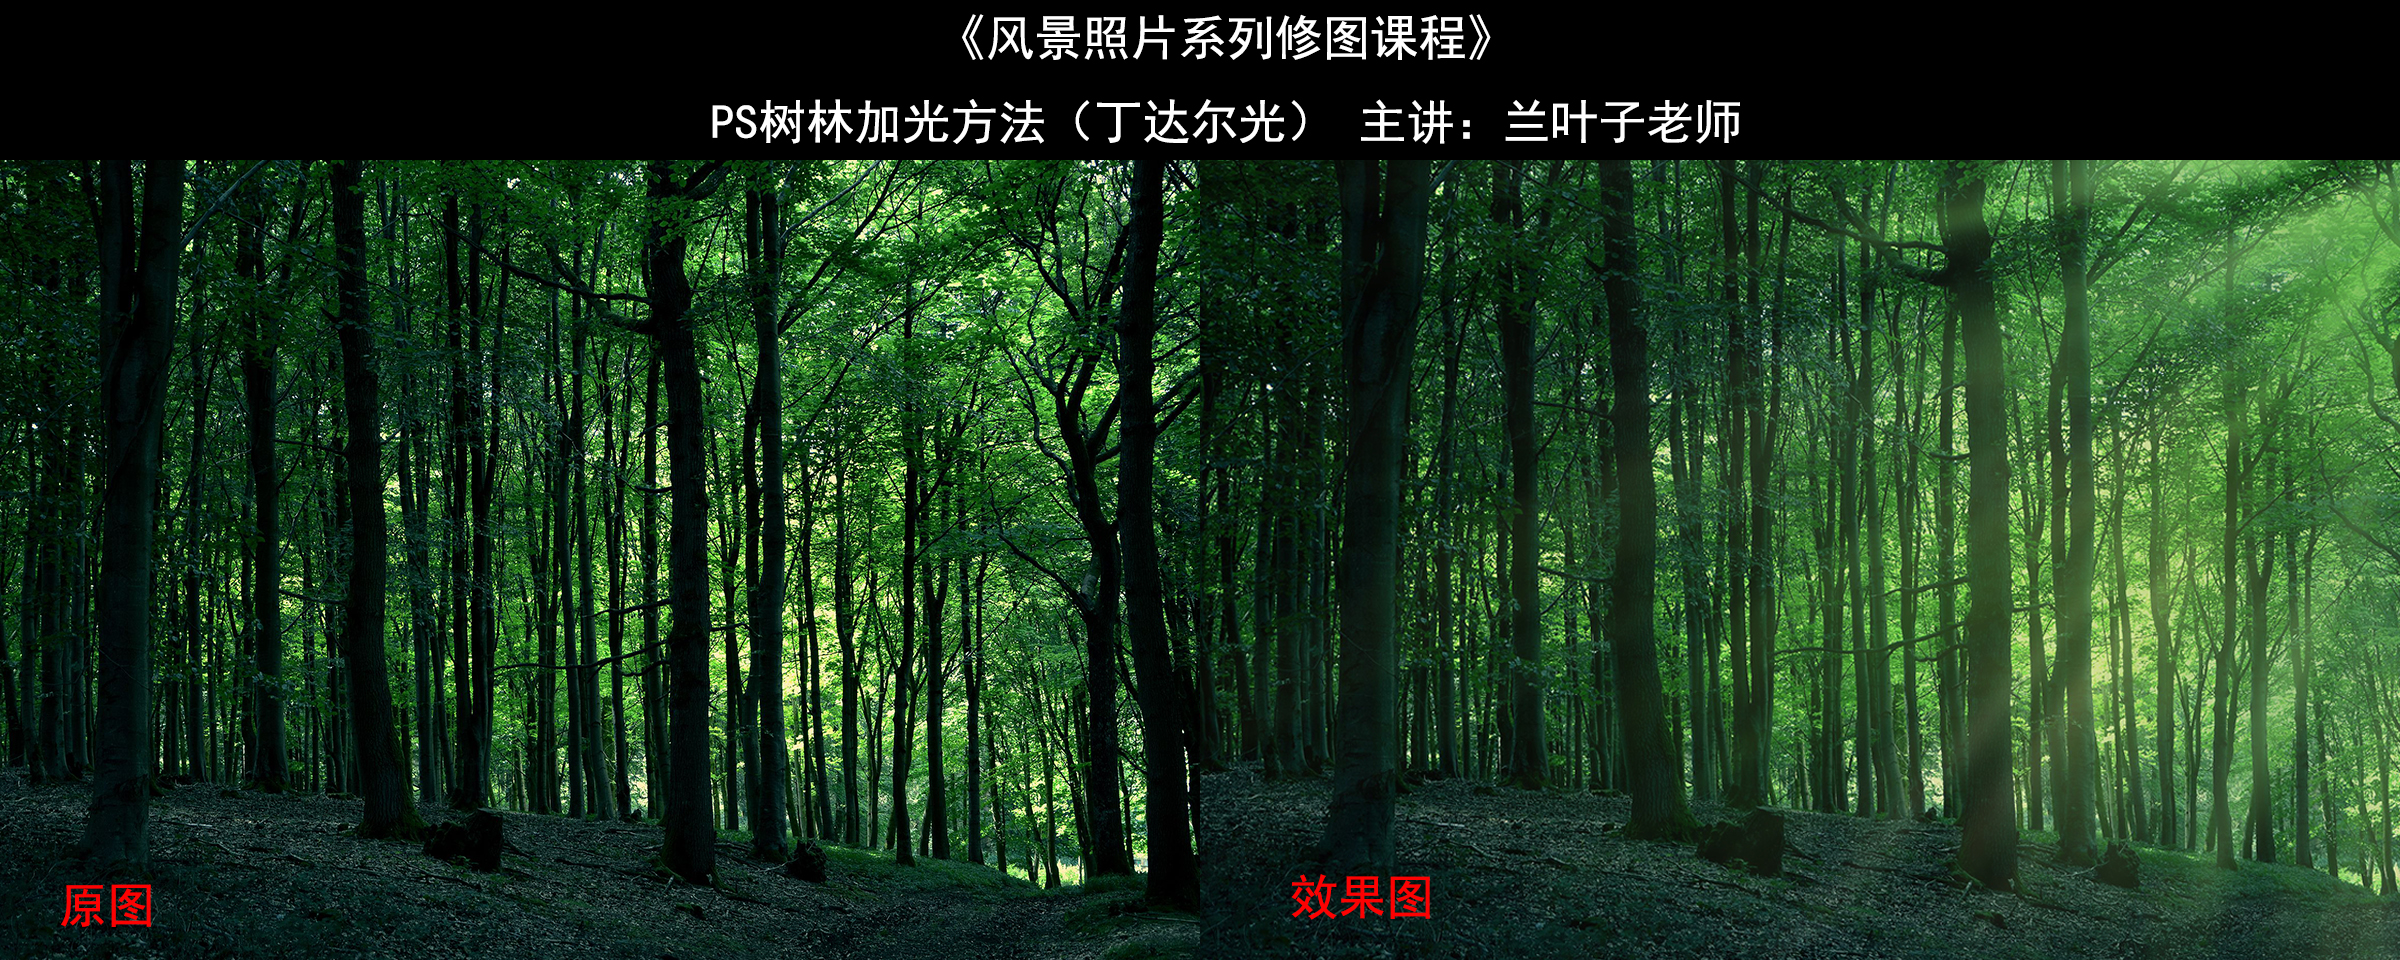 树林加光效果图展示.jpg